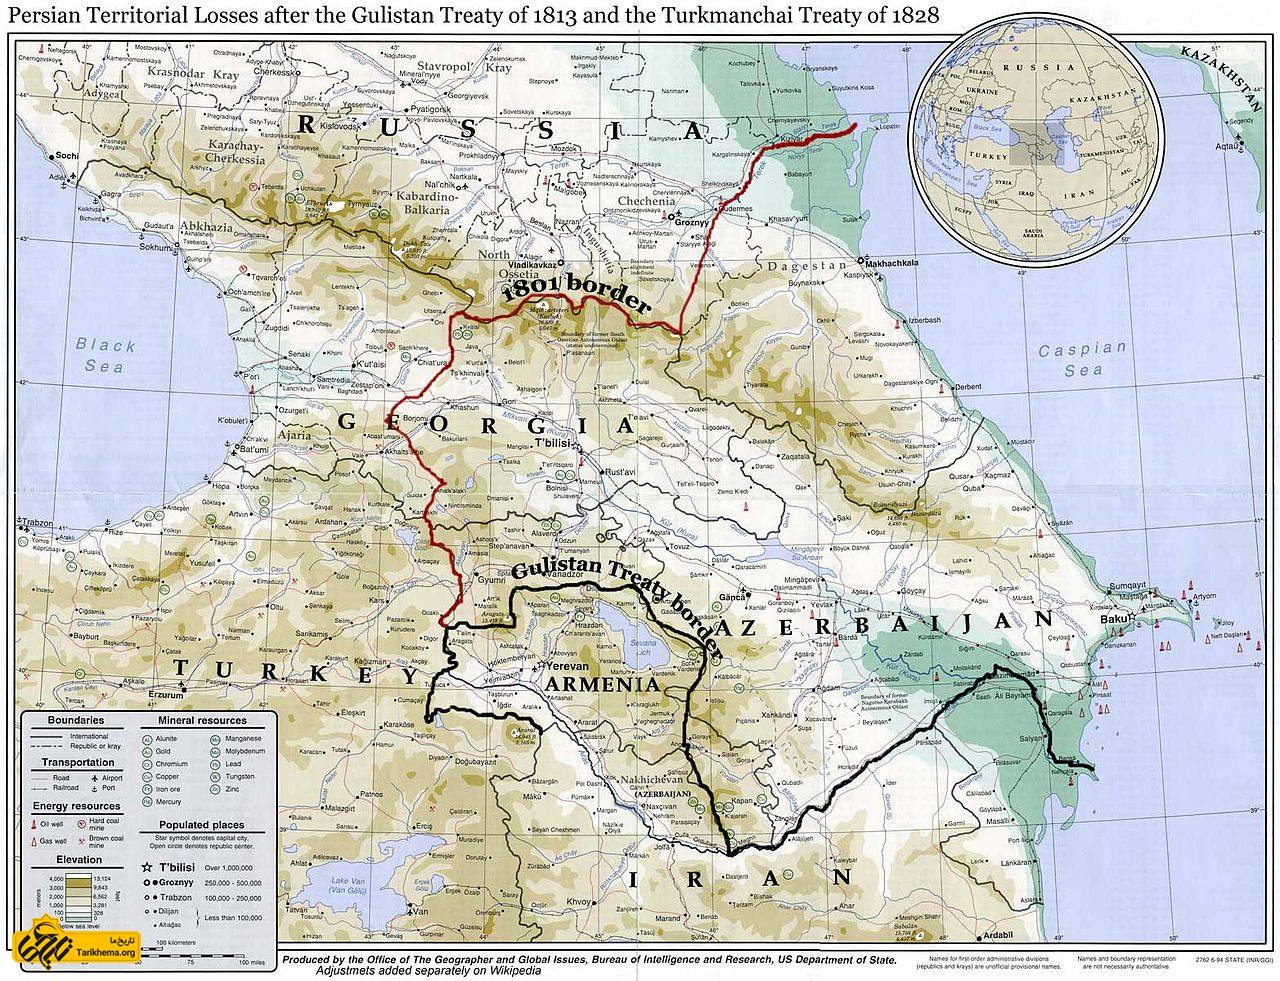 مرزهای شمال غربی ایران و روسیه تا پیش از عهدنامهٔ گلستان (خط قرمزرنگ) و پس از آن (خط سیاه‌رنگ)